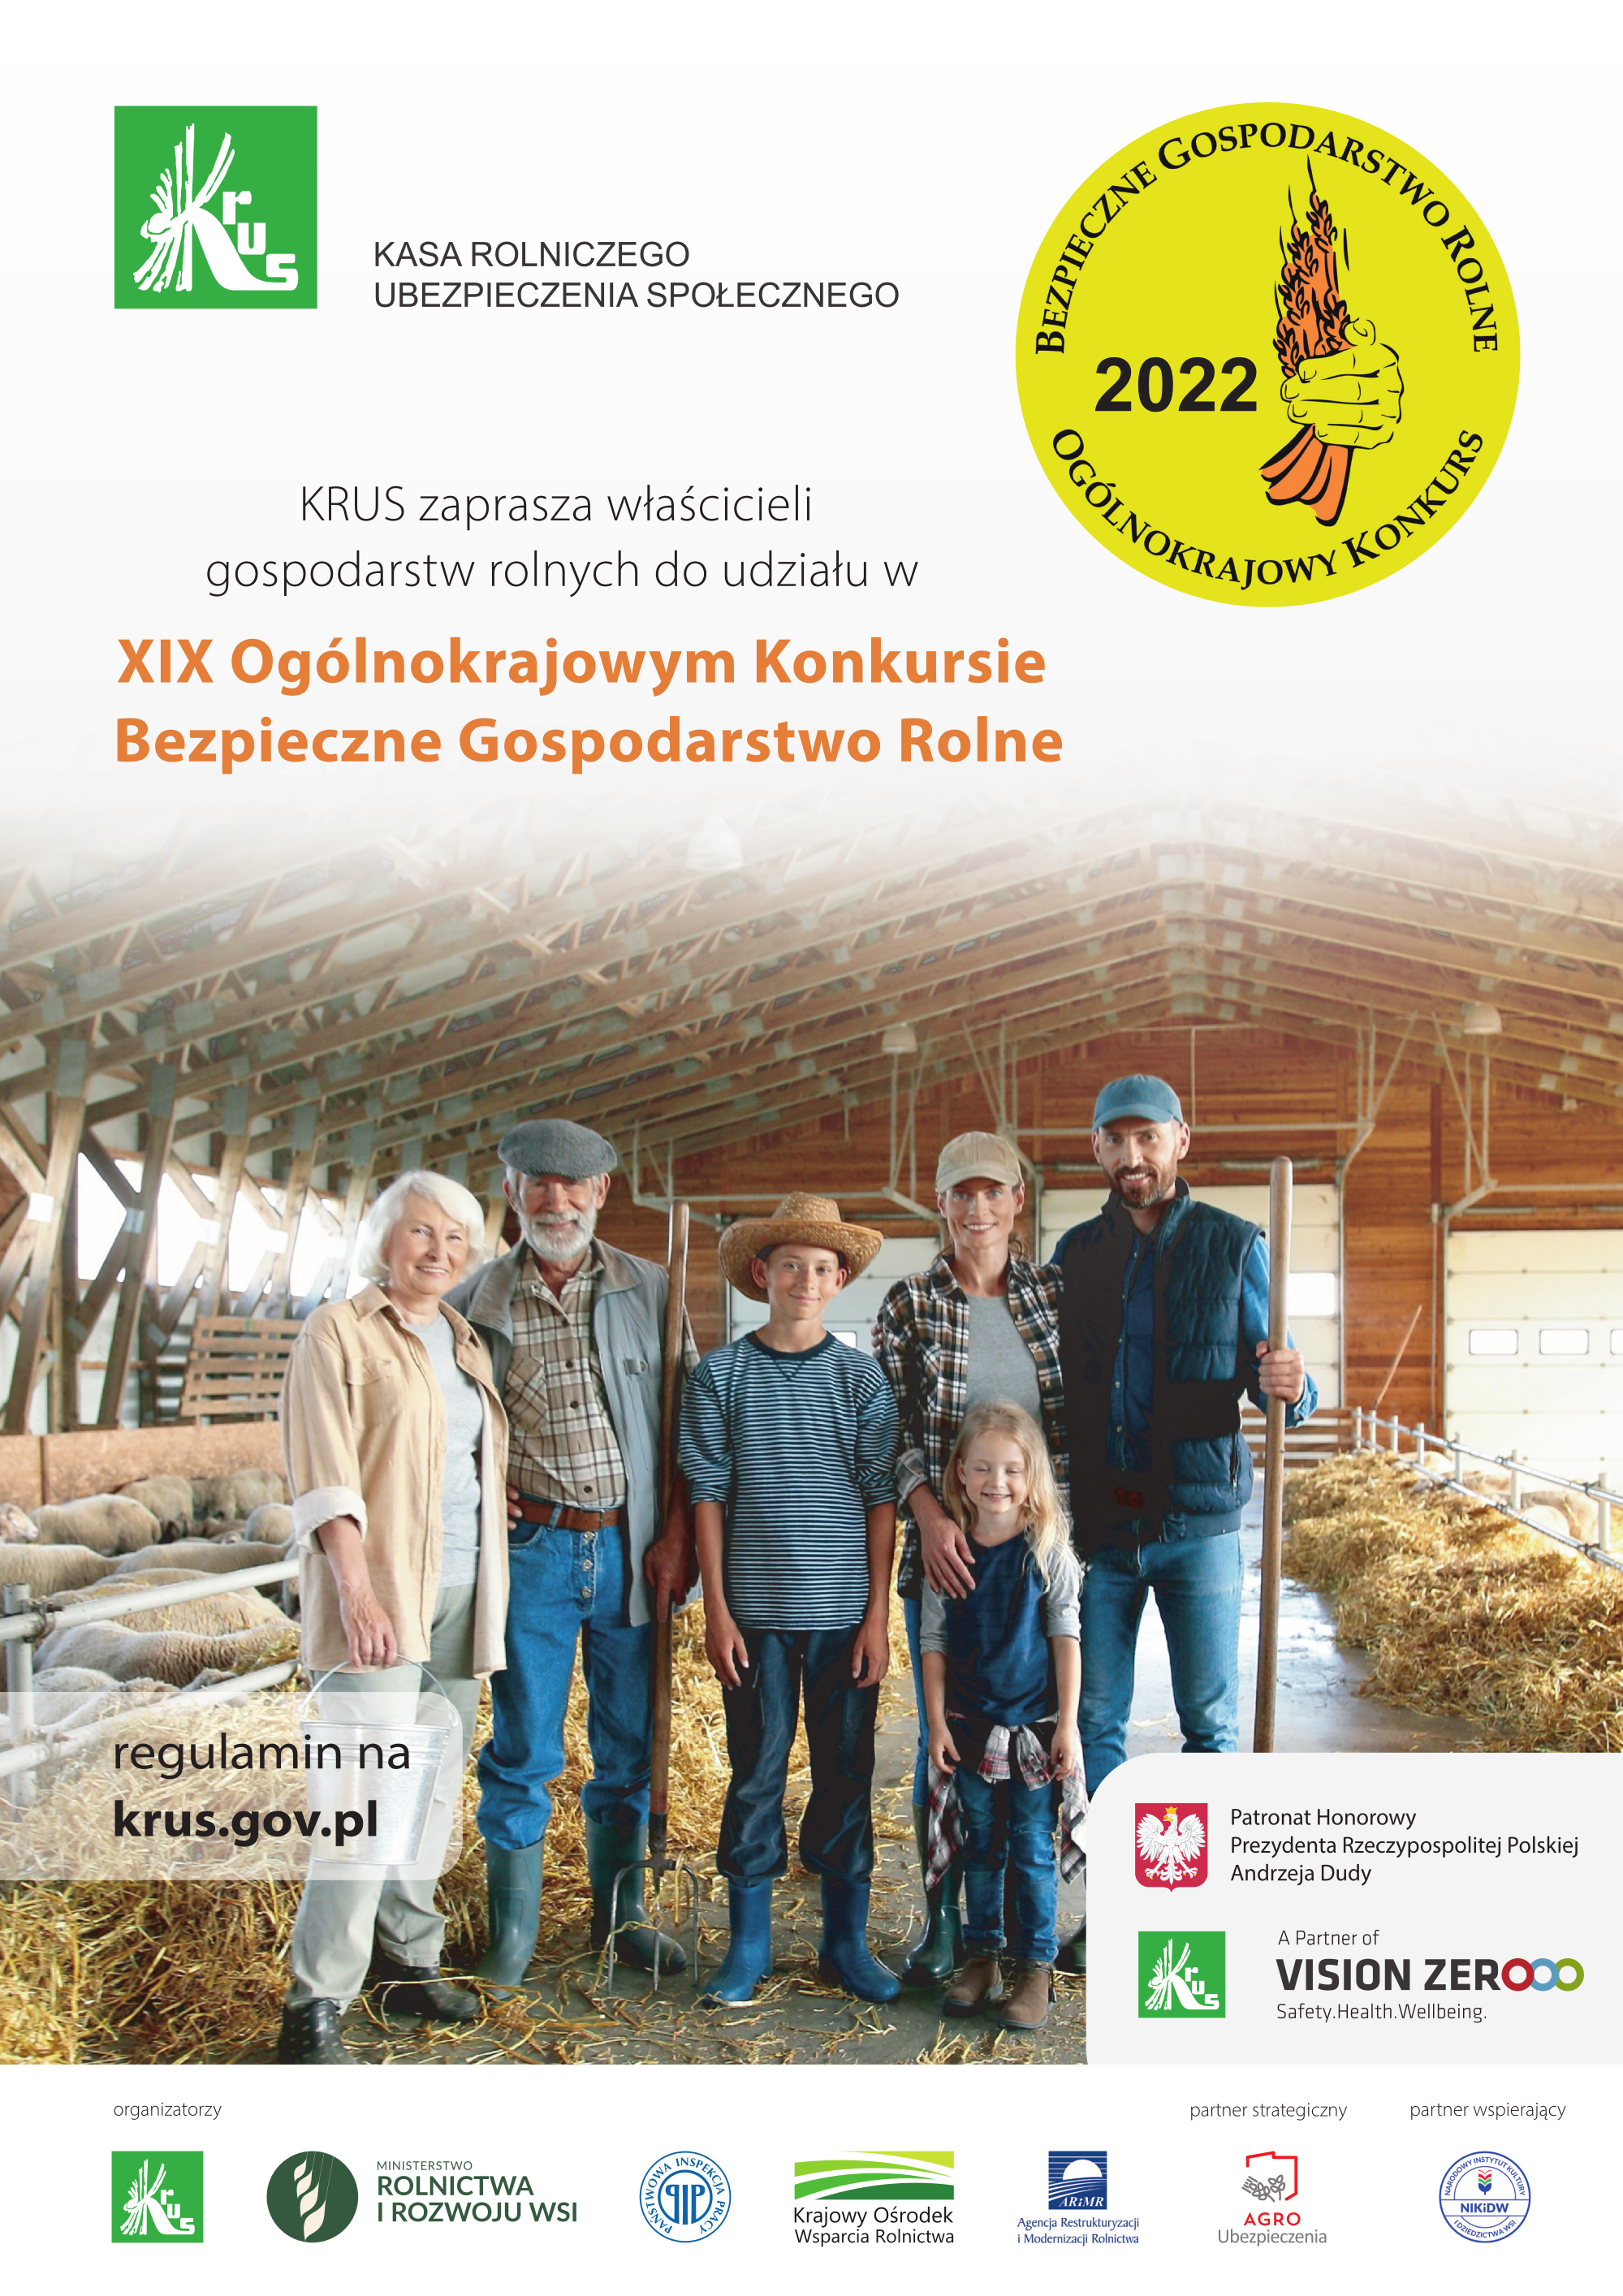 XIX Ogólnokrajowym Konkursie Bezpieczne Gospodarstwo Rolne konkurs, plakat